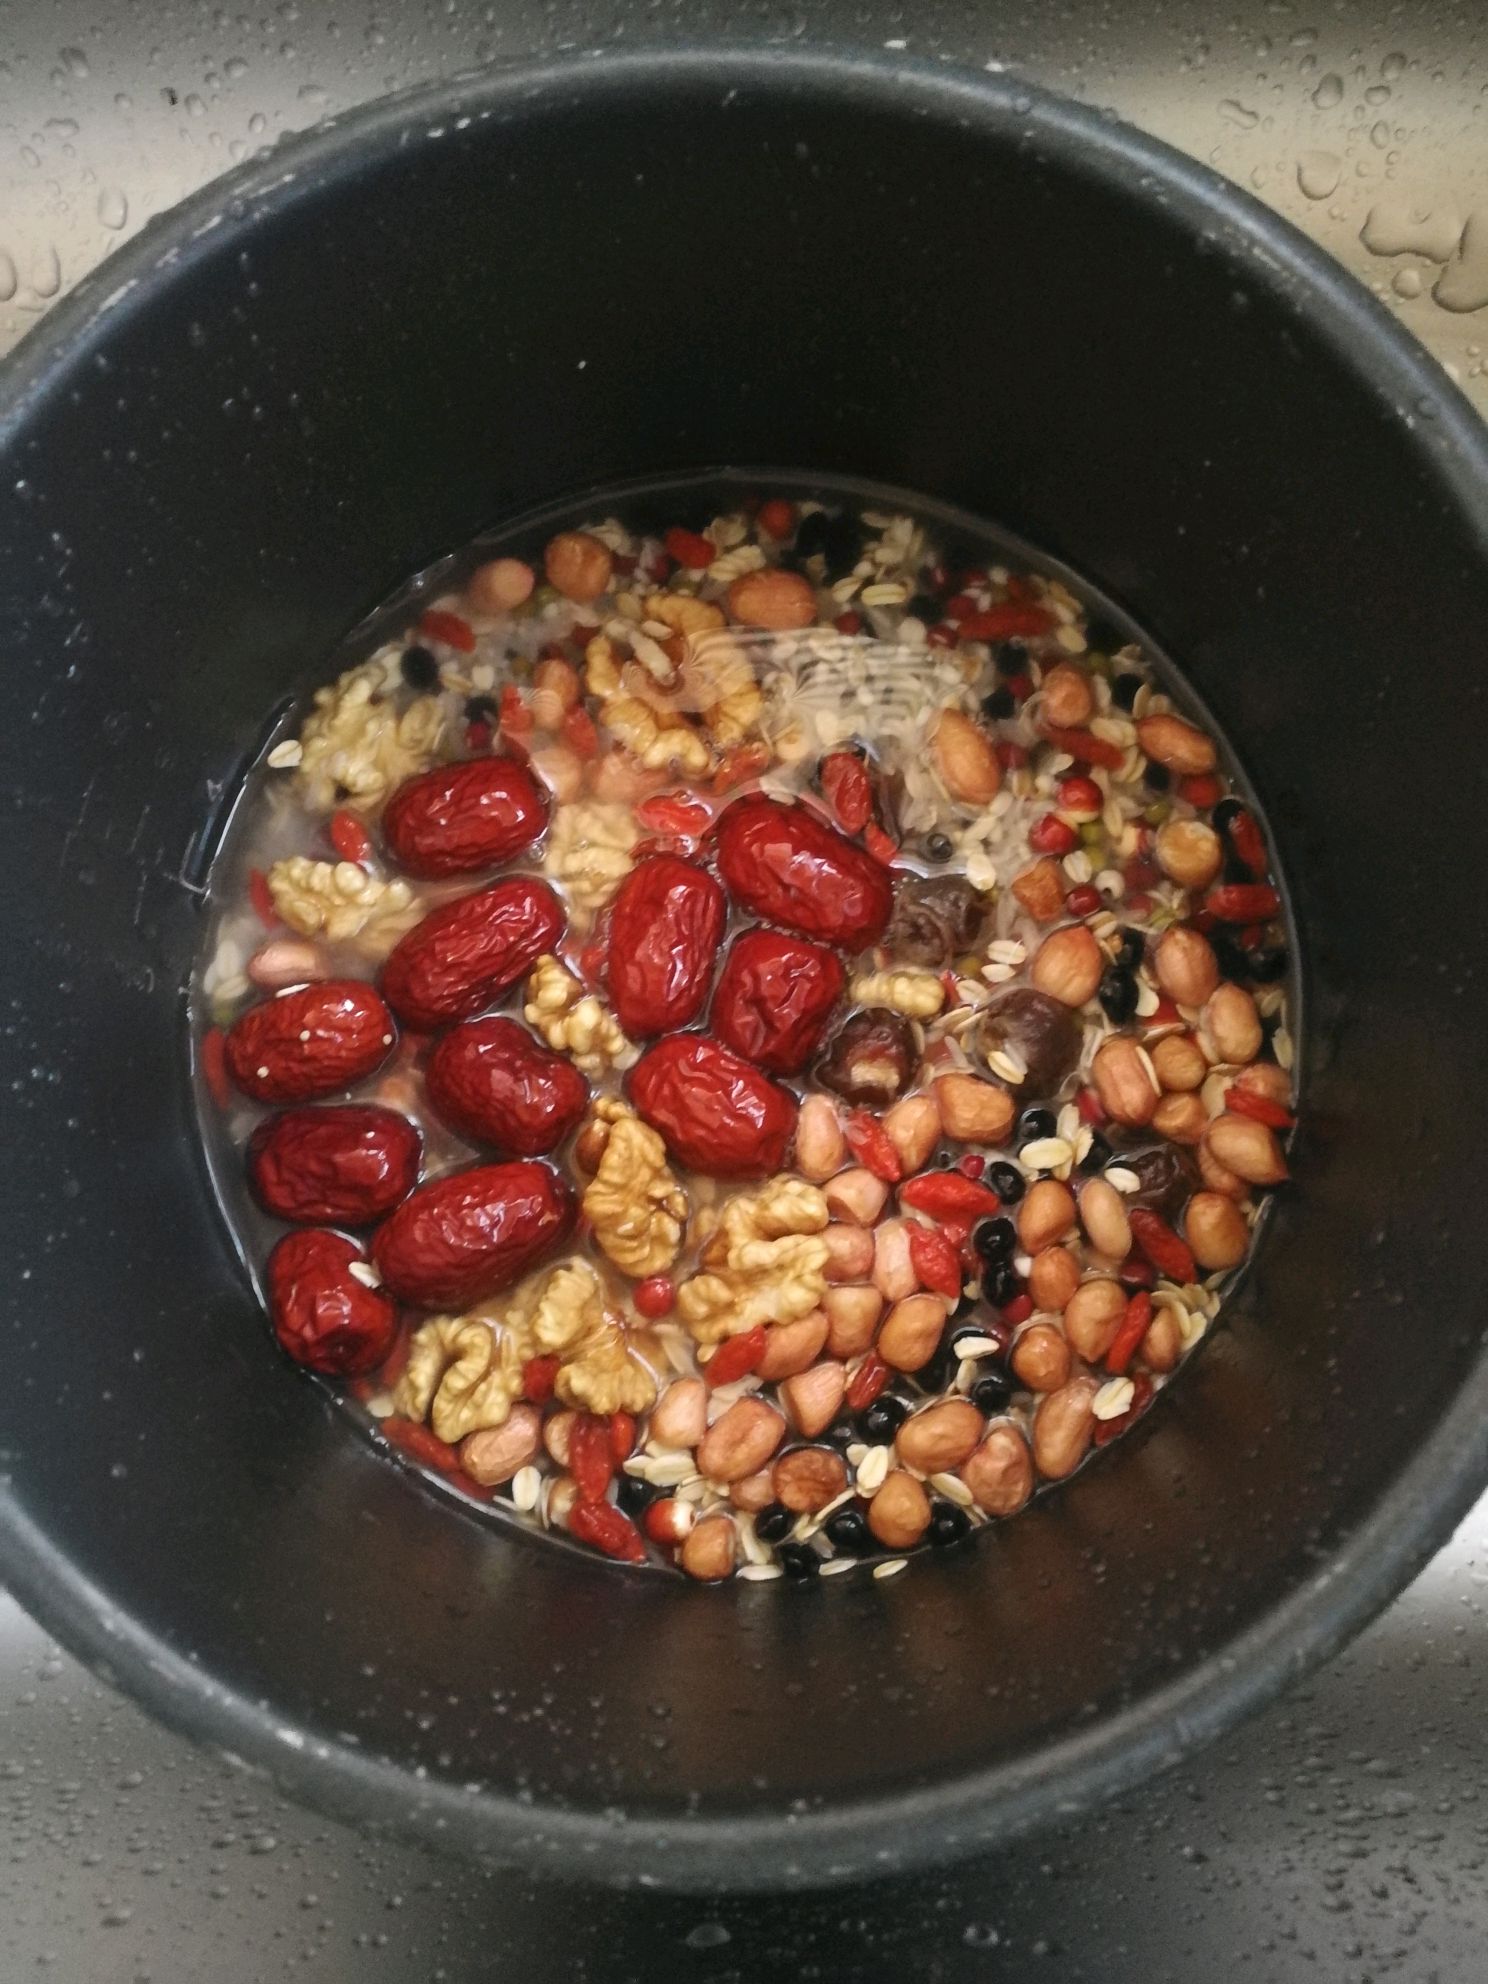 五谷杂粮豆浆的配料和制作方法 五谷杂粮豆浆配料制作方法民俗传统美食